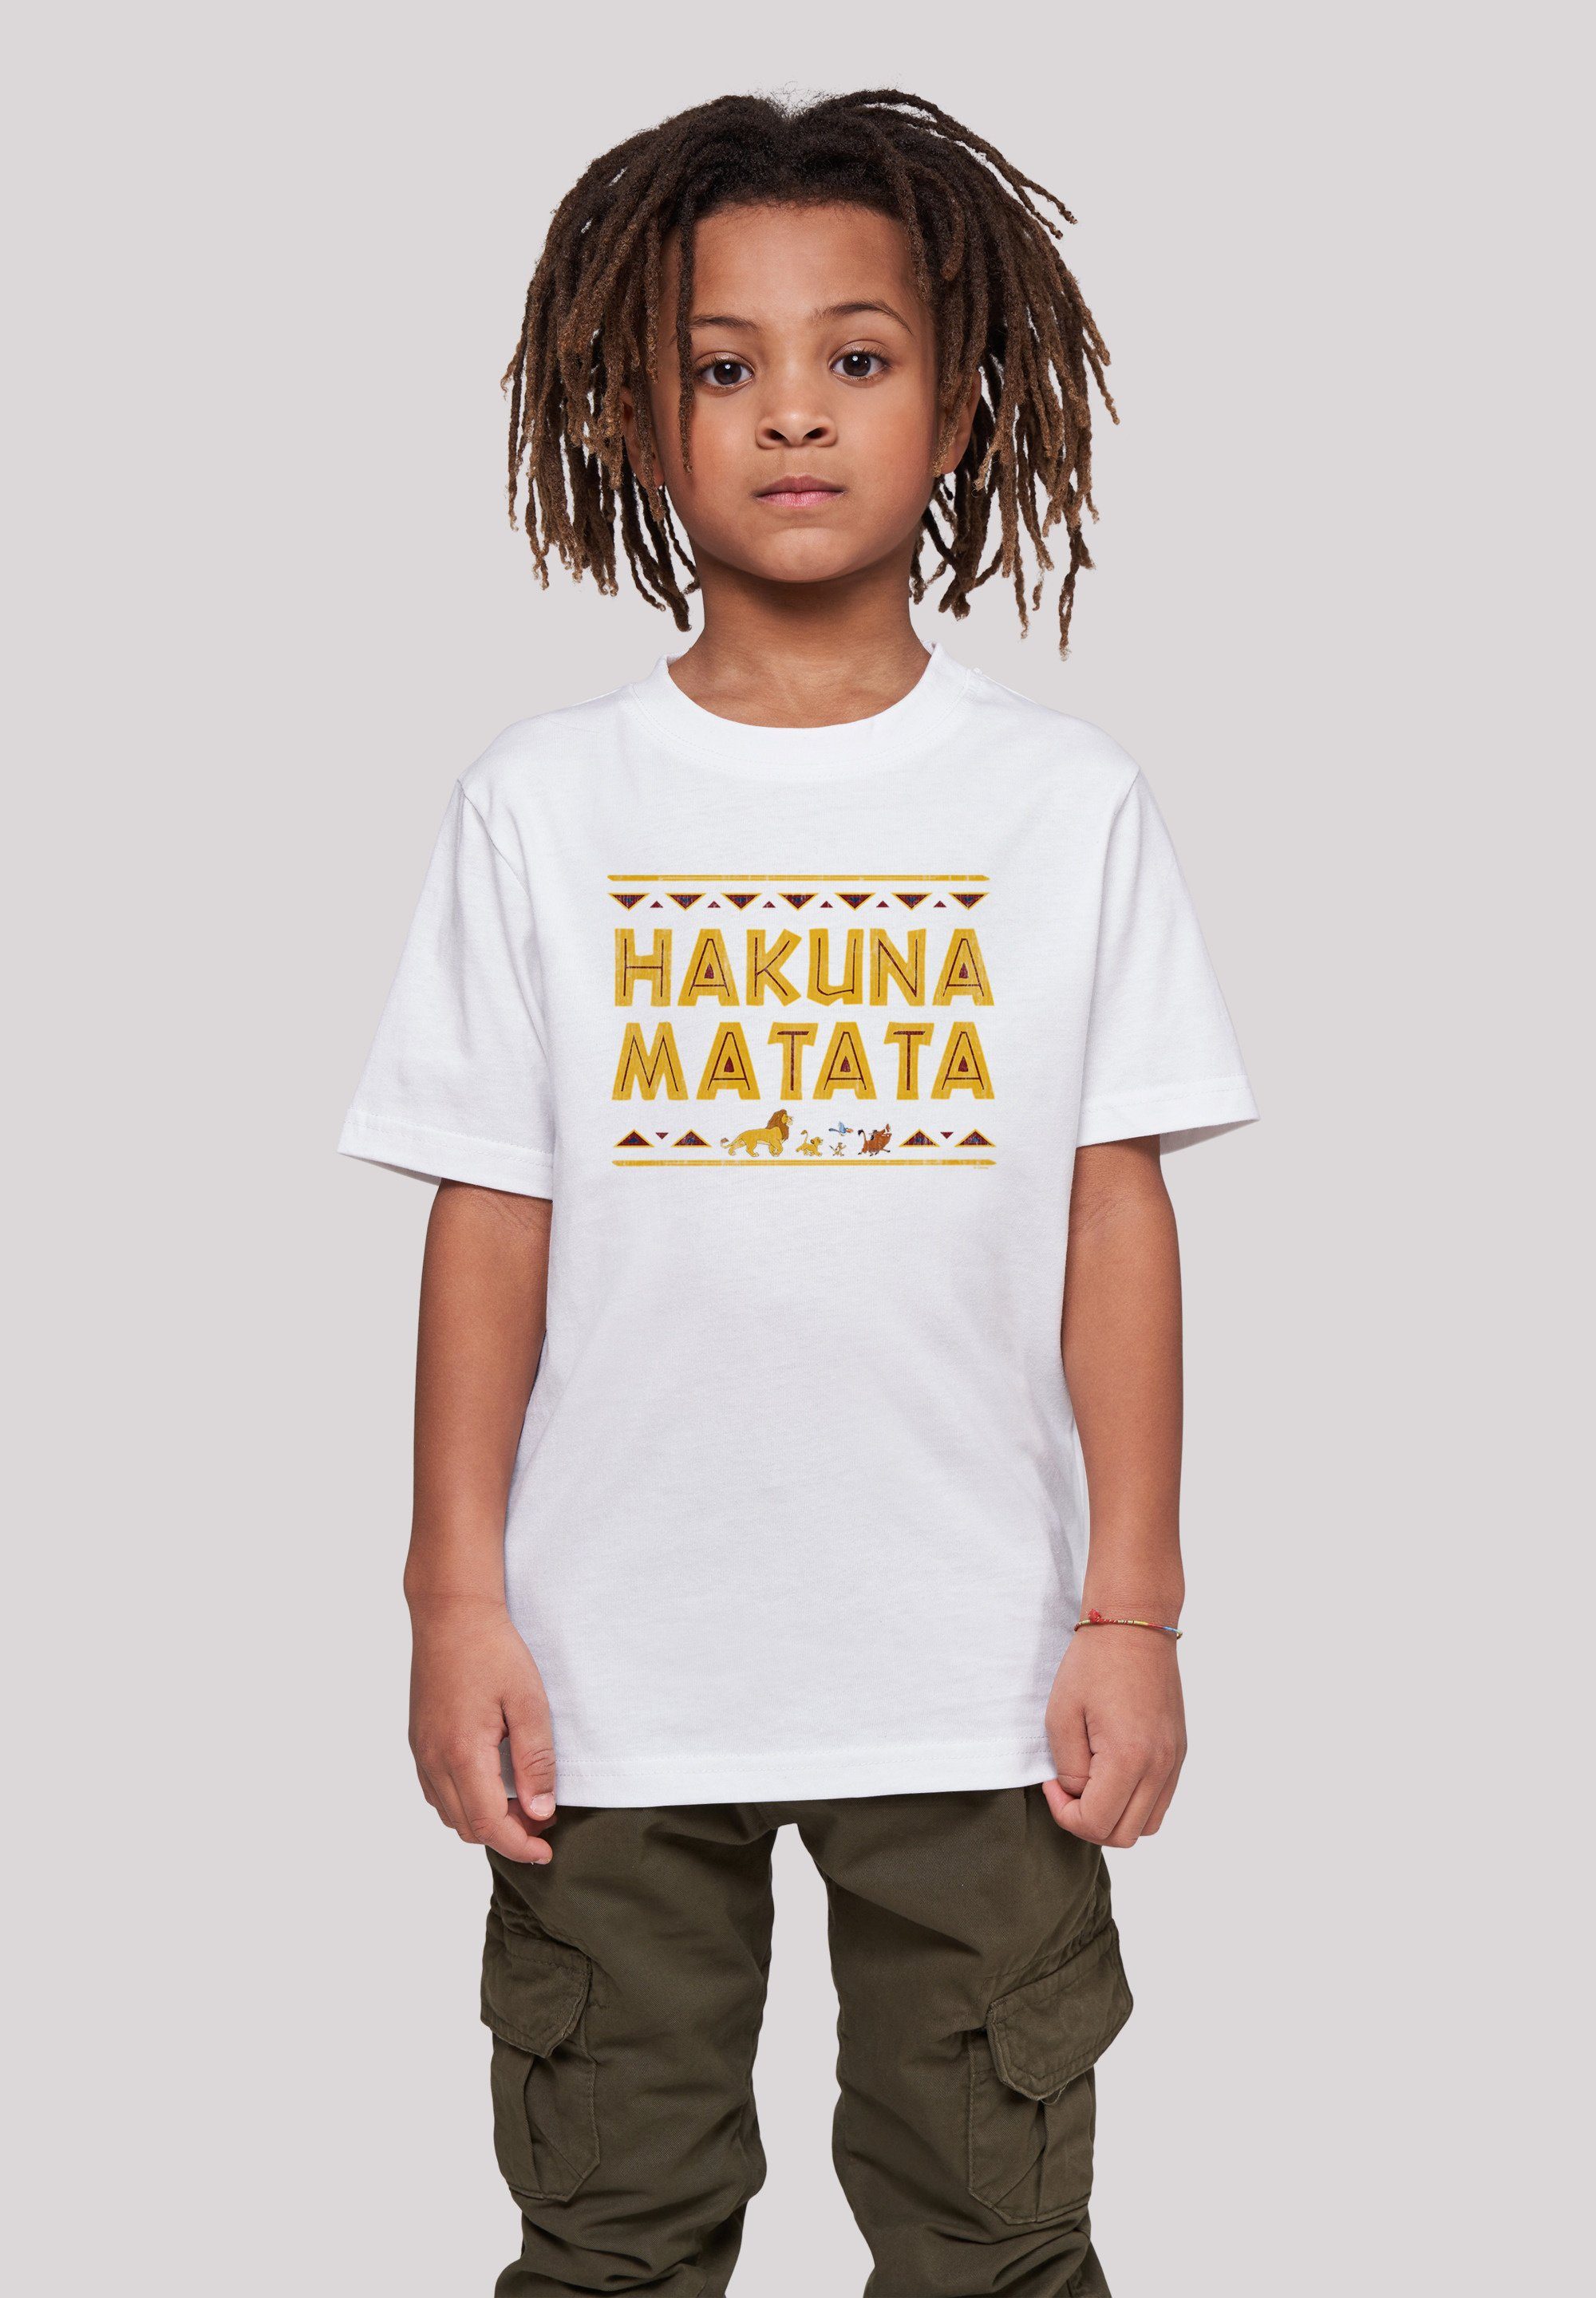 König T-Shirt Kinder,Premium Disney Unisex Löwen der Merch,Jungen,Mädchen,Bedruckt Matata F4NT4STIC Hakuna